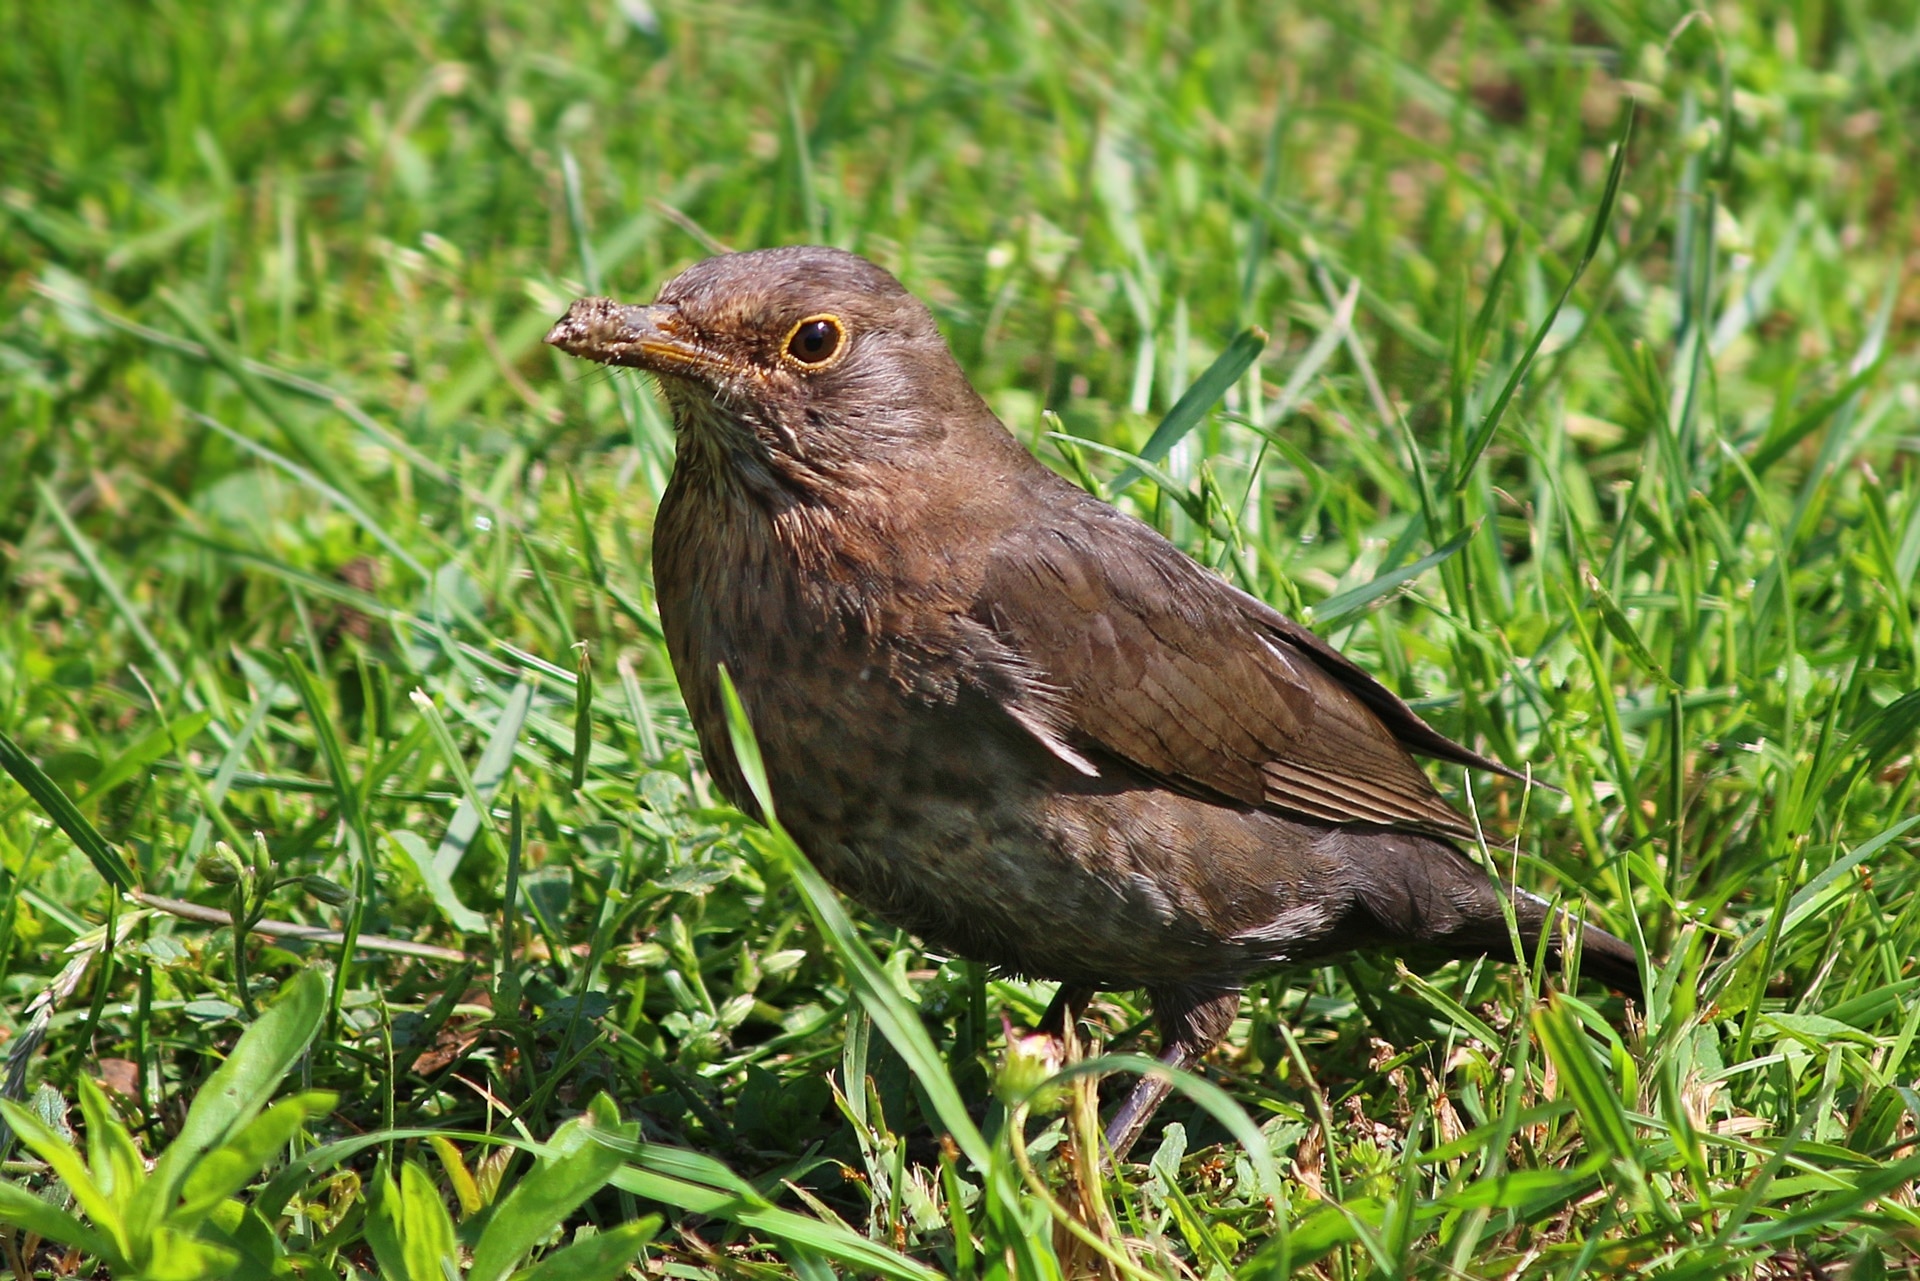 brown Bird on grass during daytime